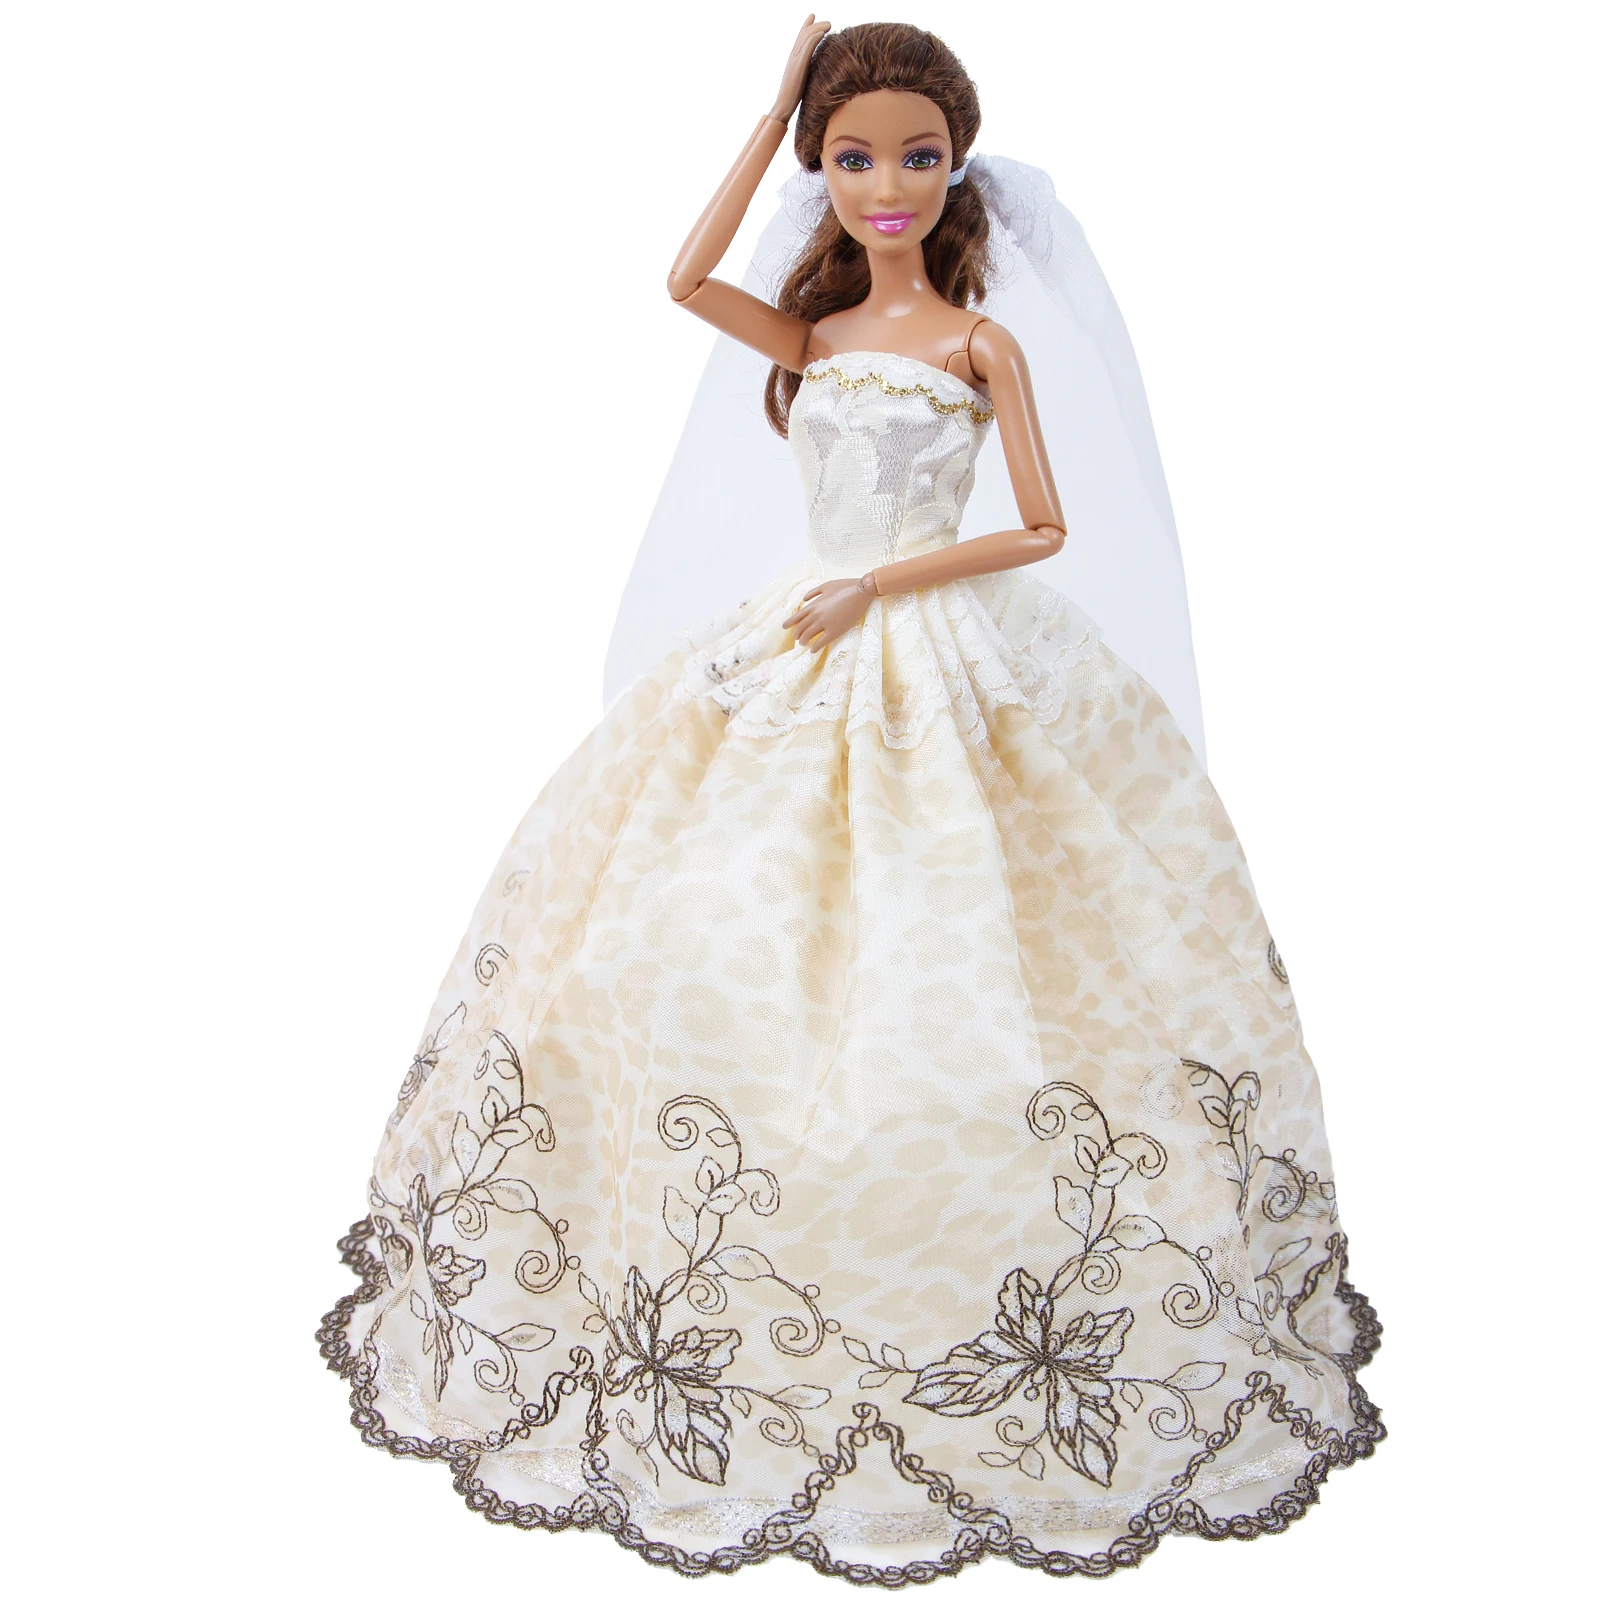 Ручной работы для свадьбы Кружевное белое платье бальное платье+ юбка из фатина, вечернее платье для принцессы, одежда кукольный домик аксессуары для Барби Кукла, детская игрушка